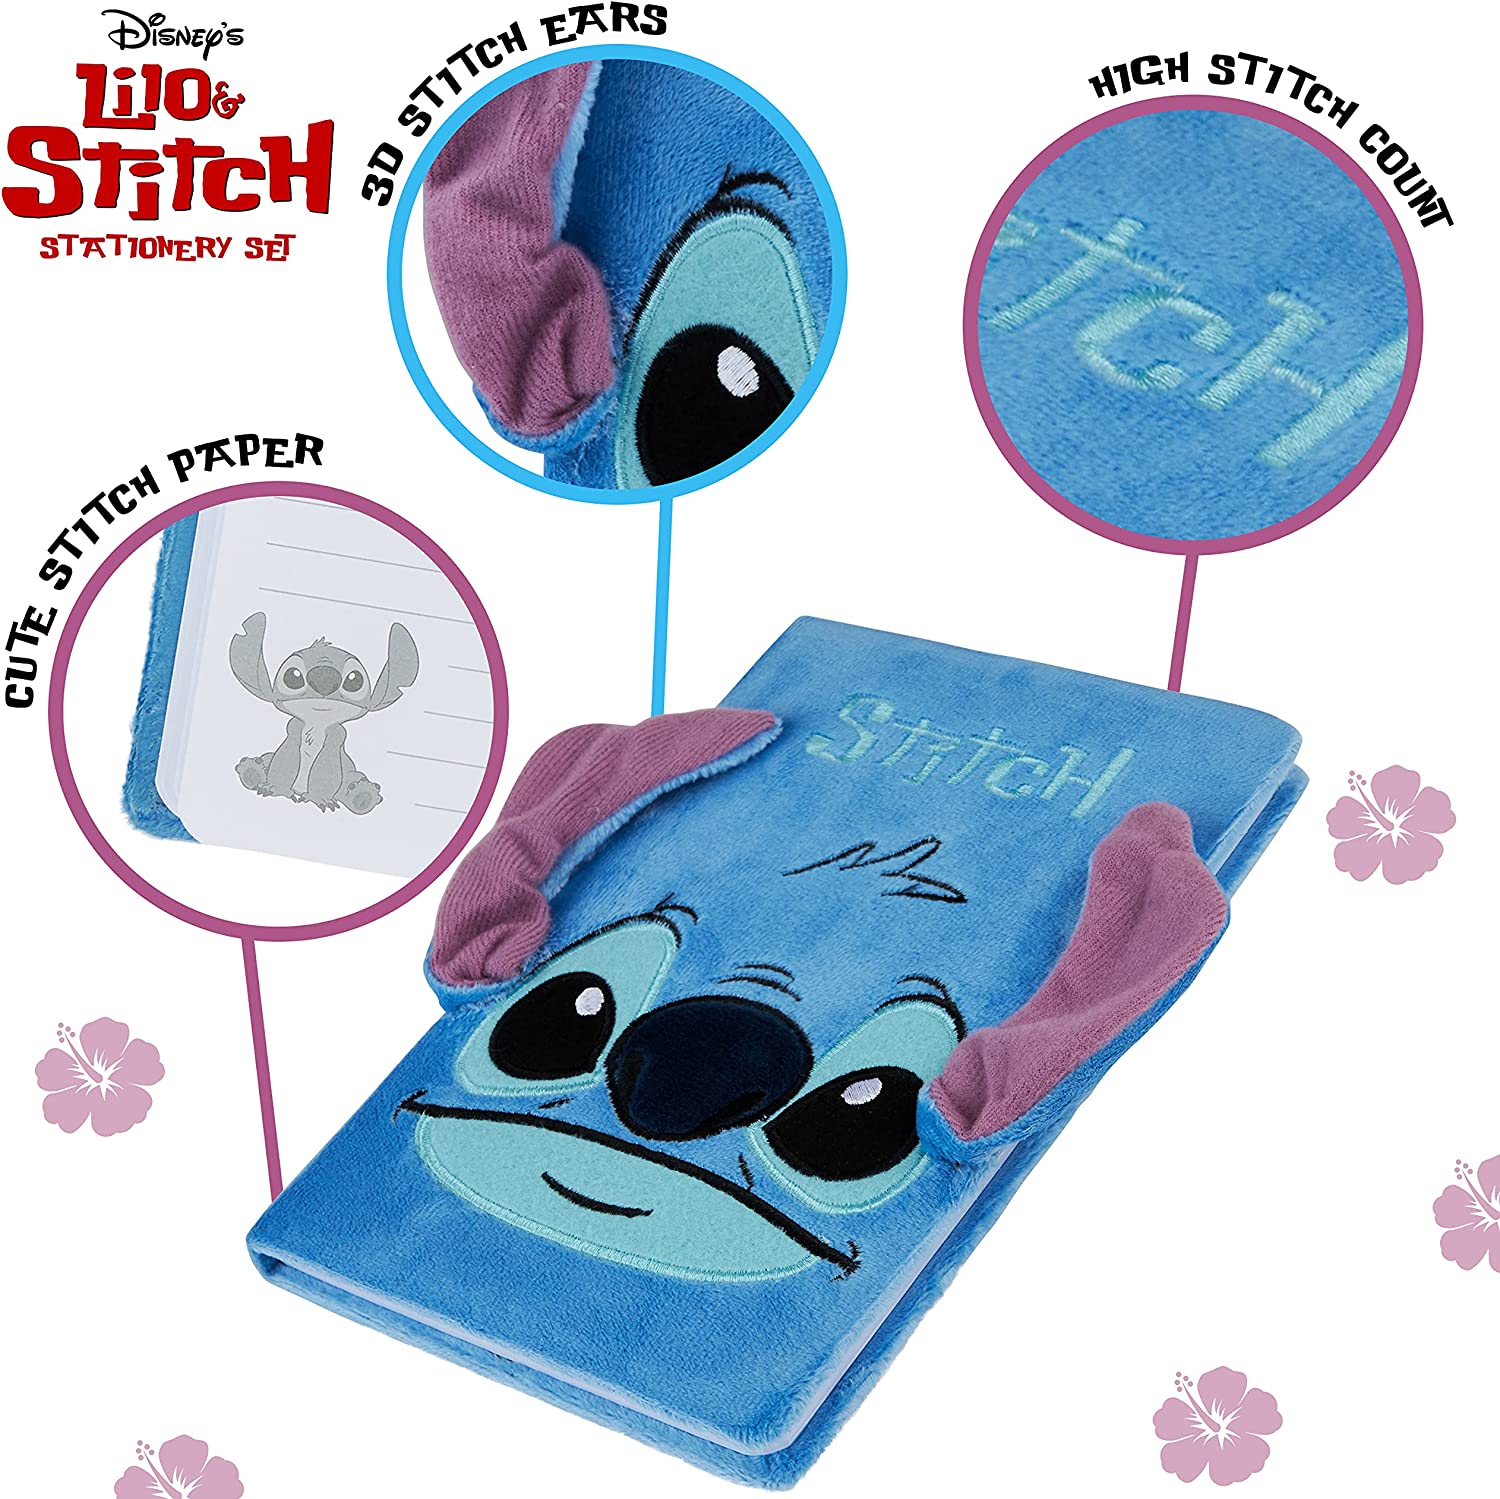 Disney Stitch Stationery Set  Lilo and stitch drawings, Lilo and stitch  merchandise, Stitch disney